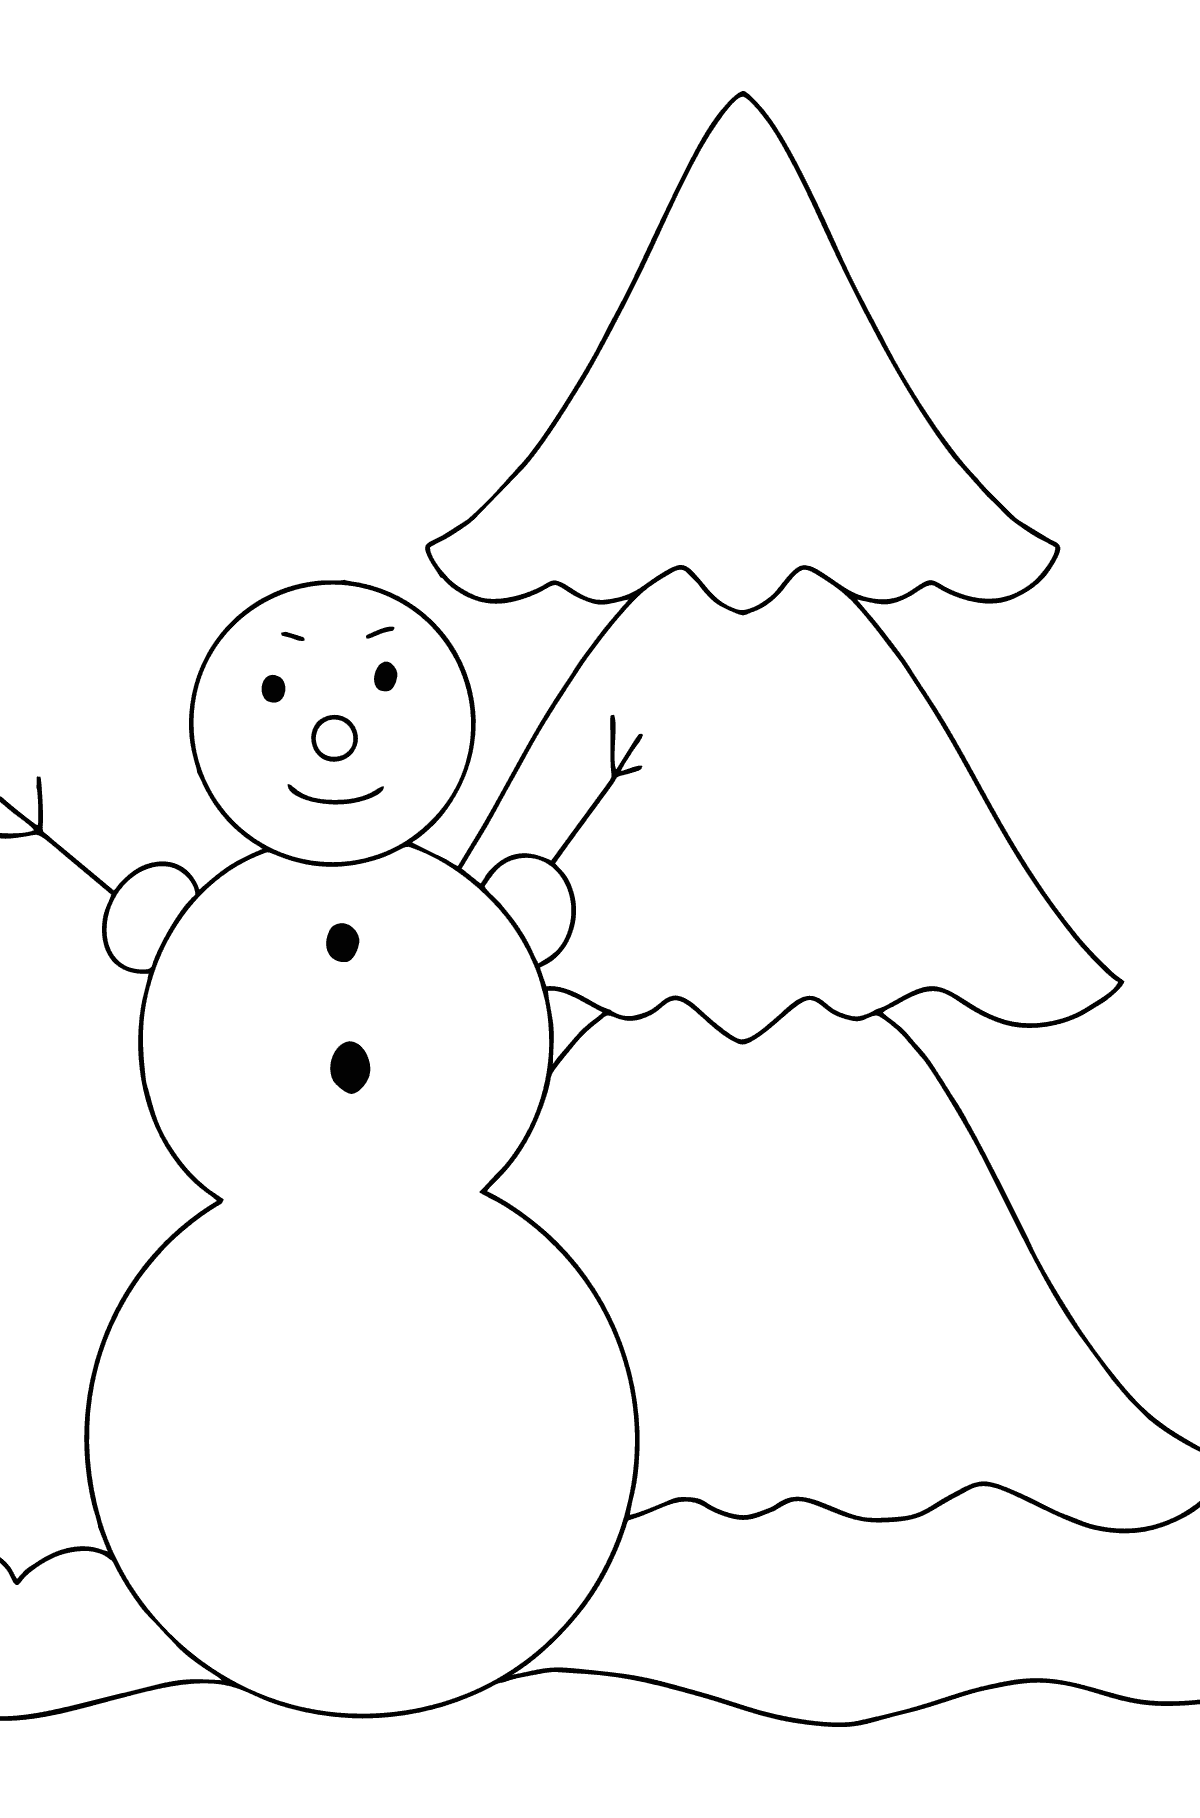 Kleurplaat sneeuwpop en boom - kleurplaten voor kinderen